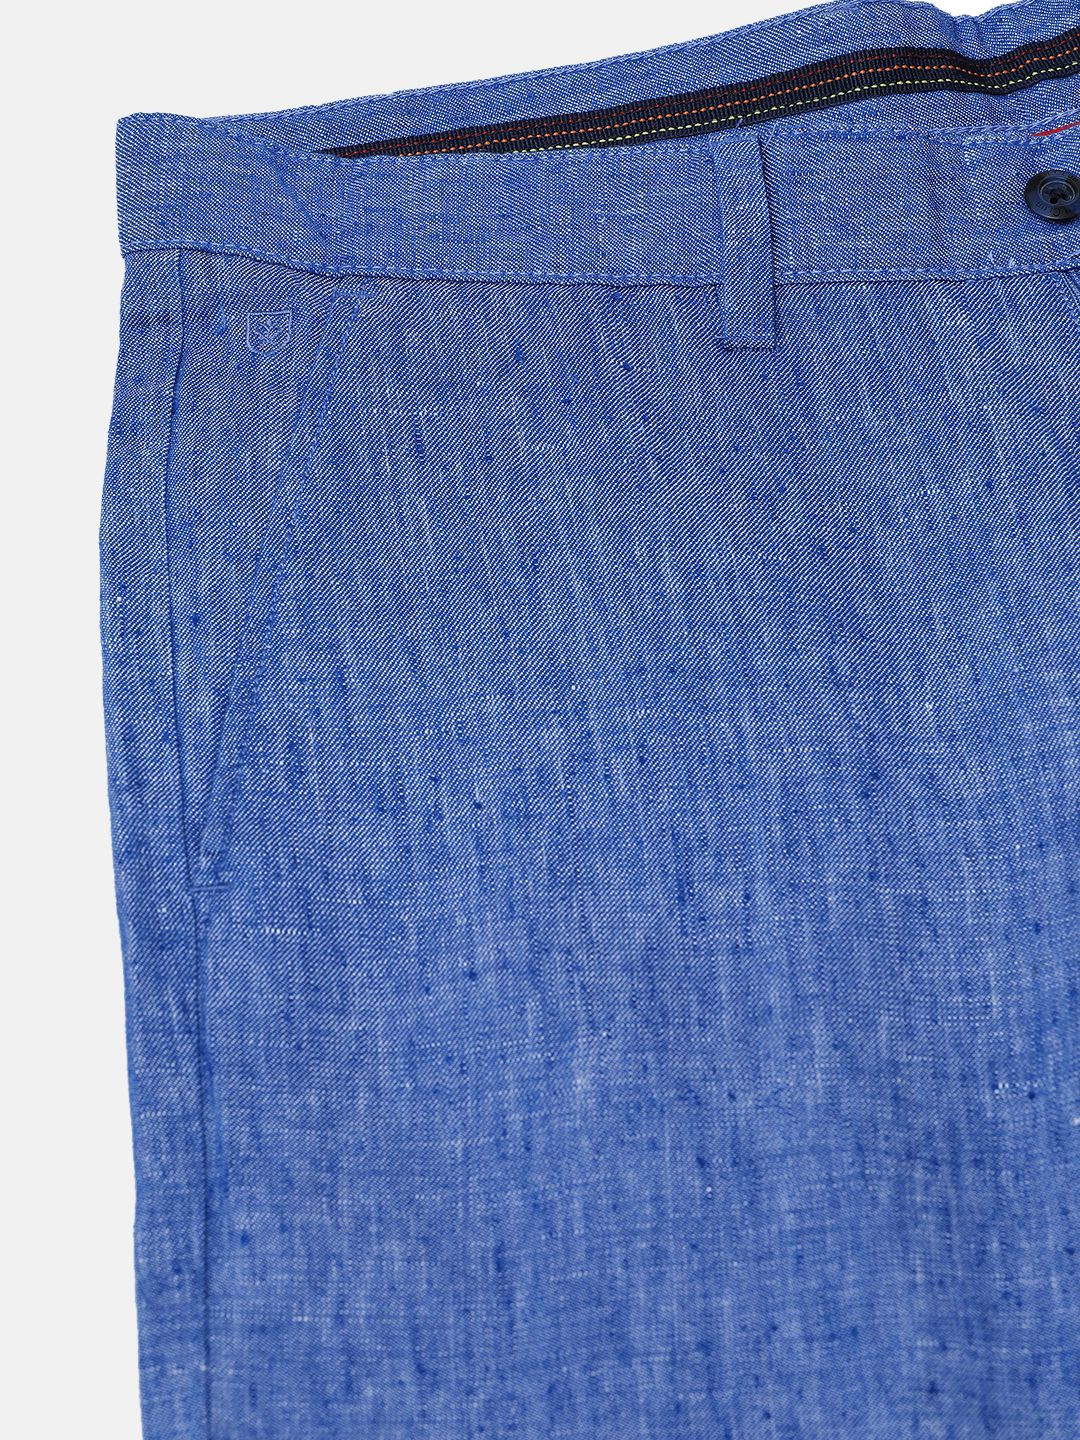 Buy Light Blue Linen Elasticated Wide Leg Formal Trouser Online   FableStreet